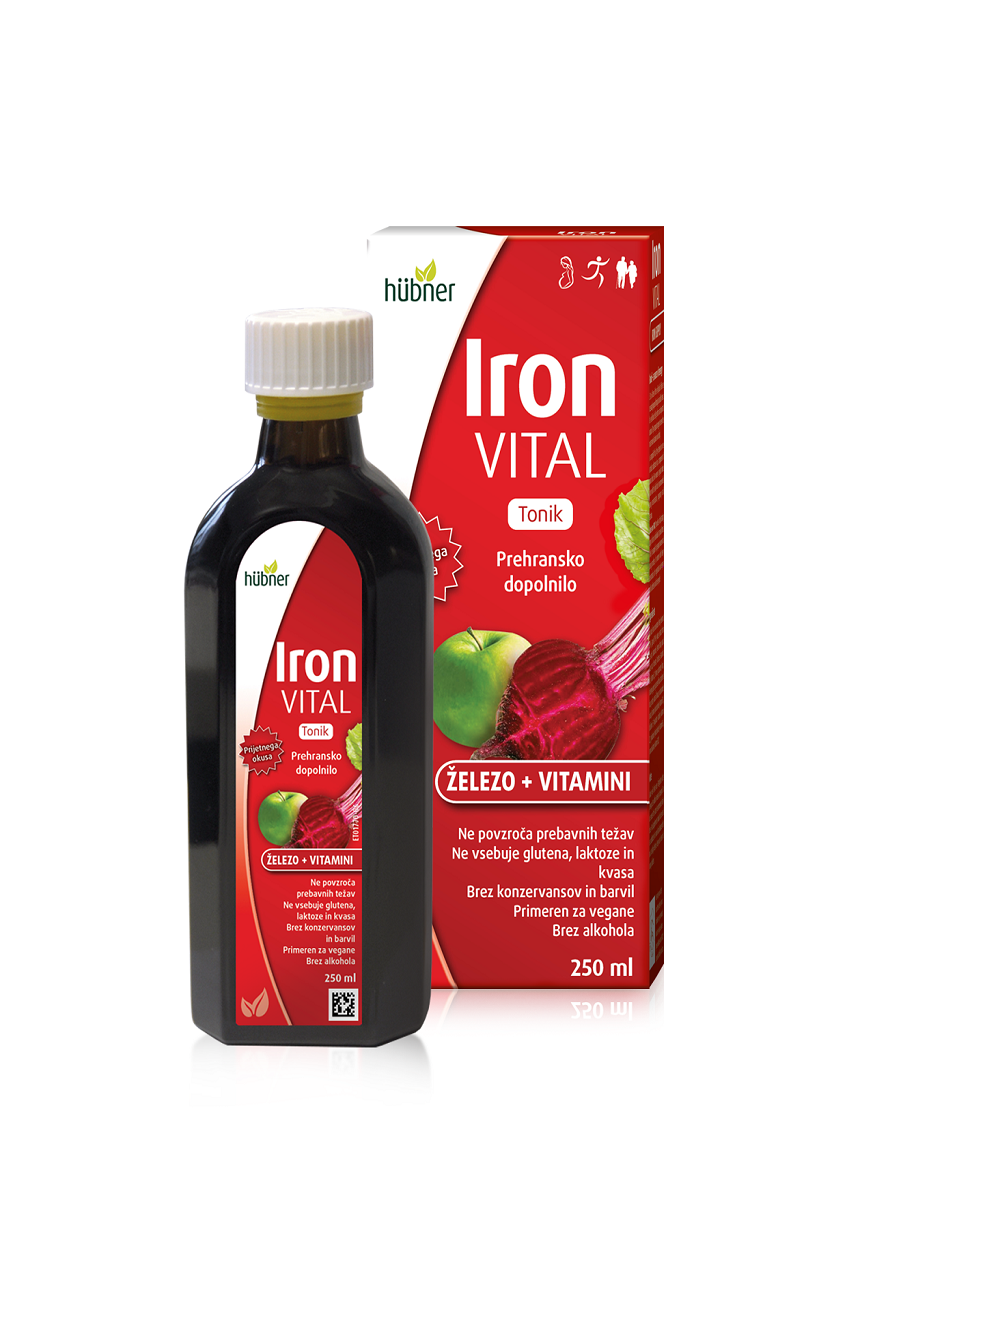 Iron Vital tonik z železom in vitamini, 250 ml